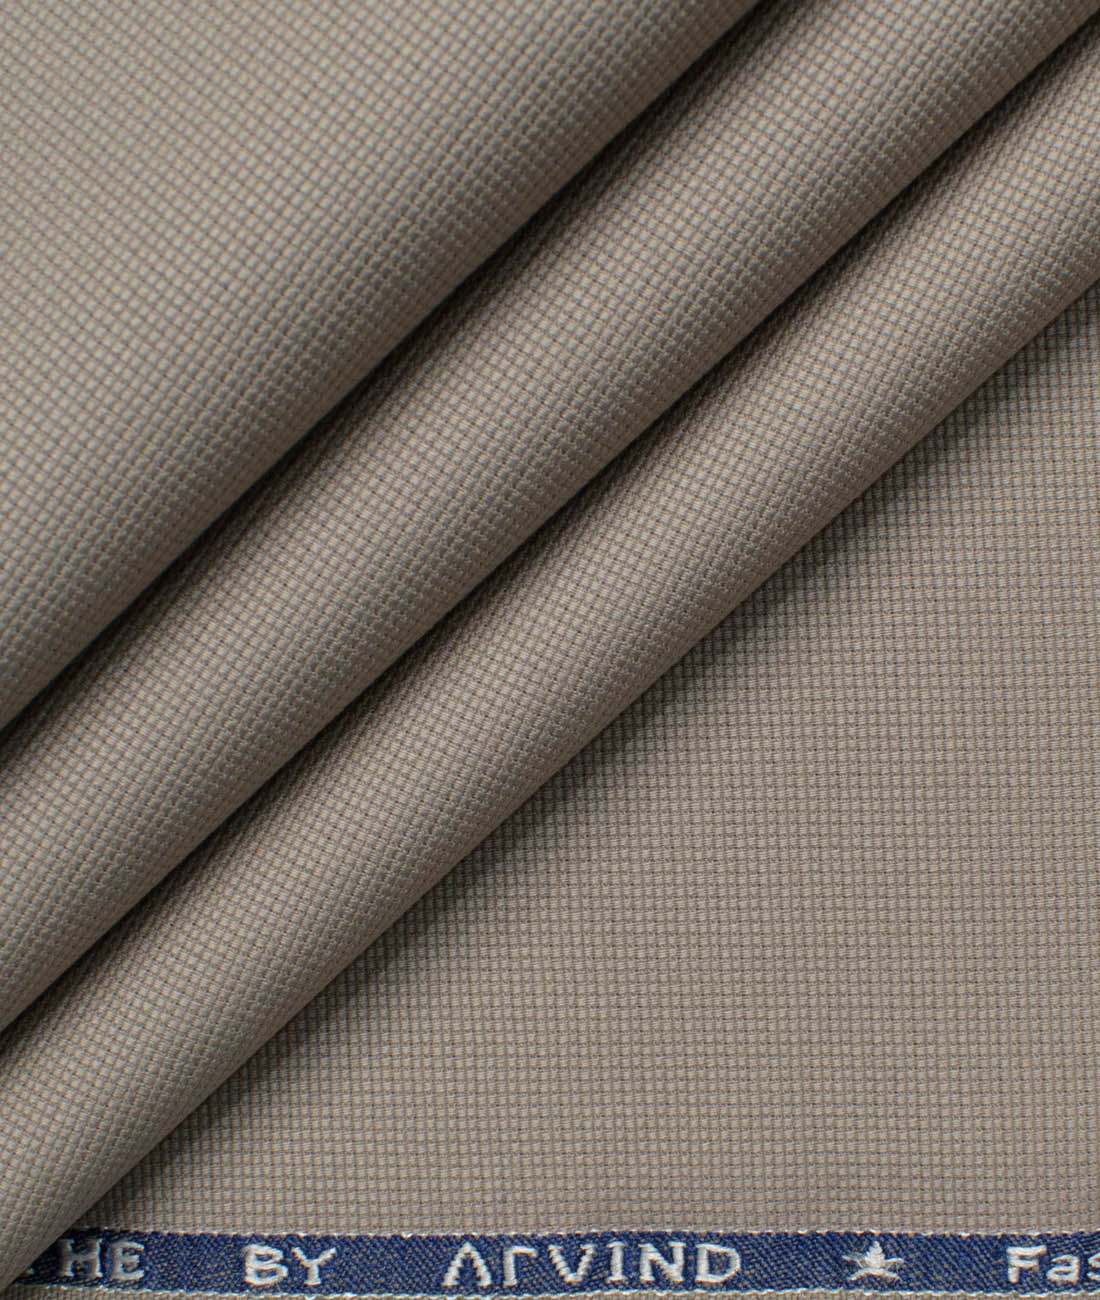 Arvind Tresca Men's Cotton Corduroy Unstitched Stretchable Corduroy Trouser  Fabric (Dark Blue)